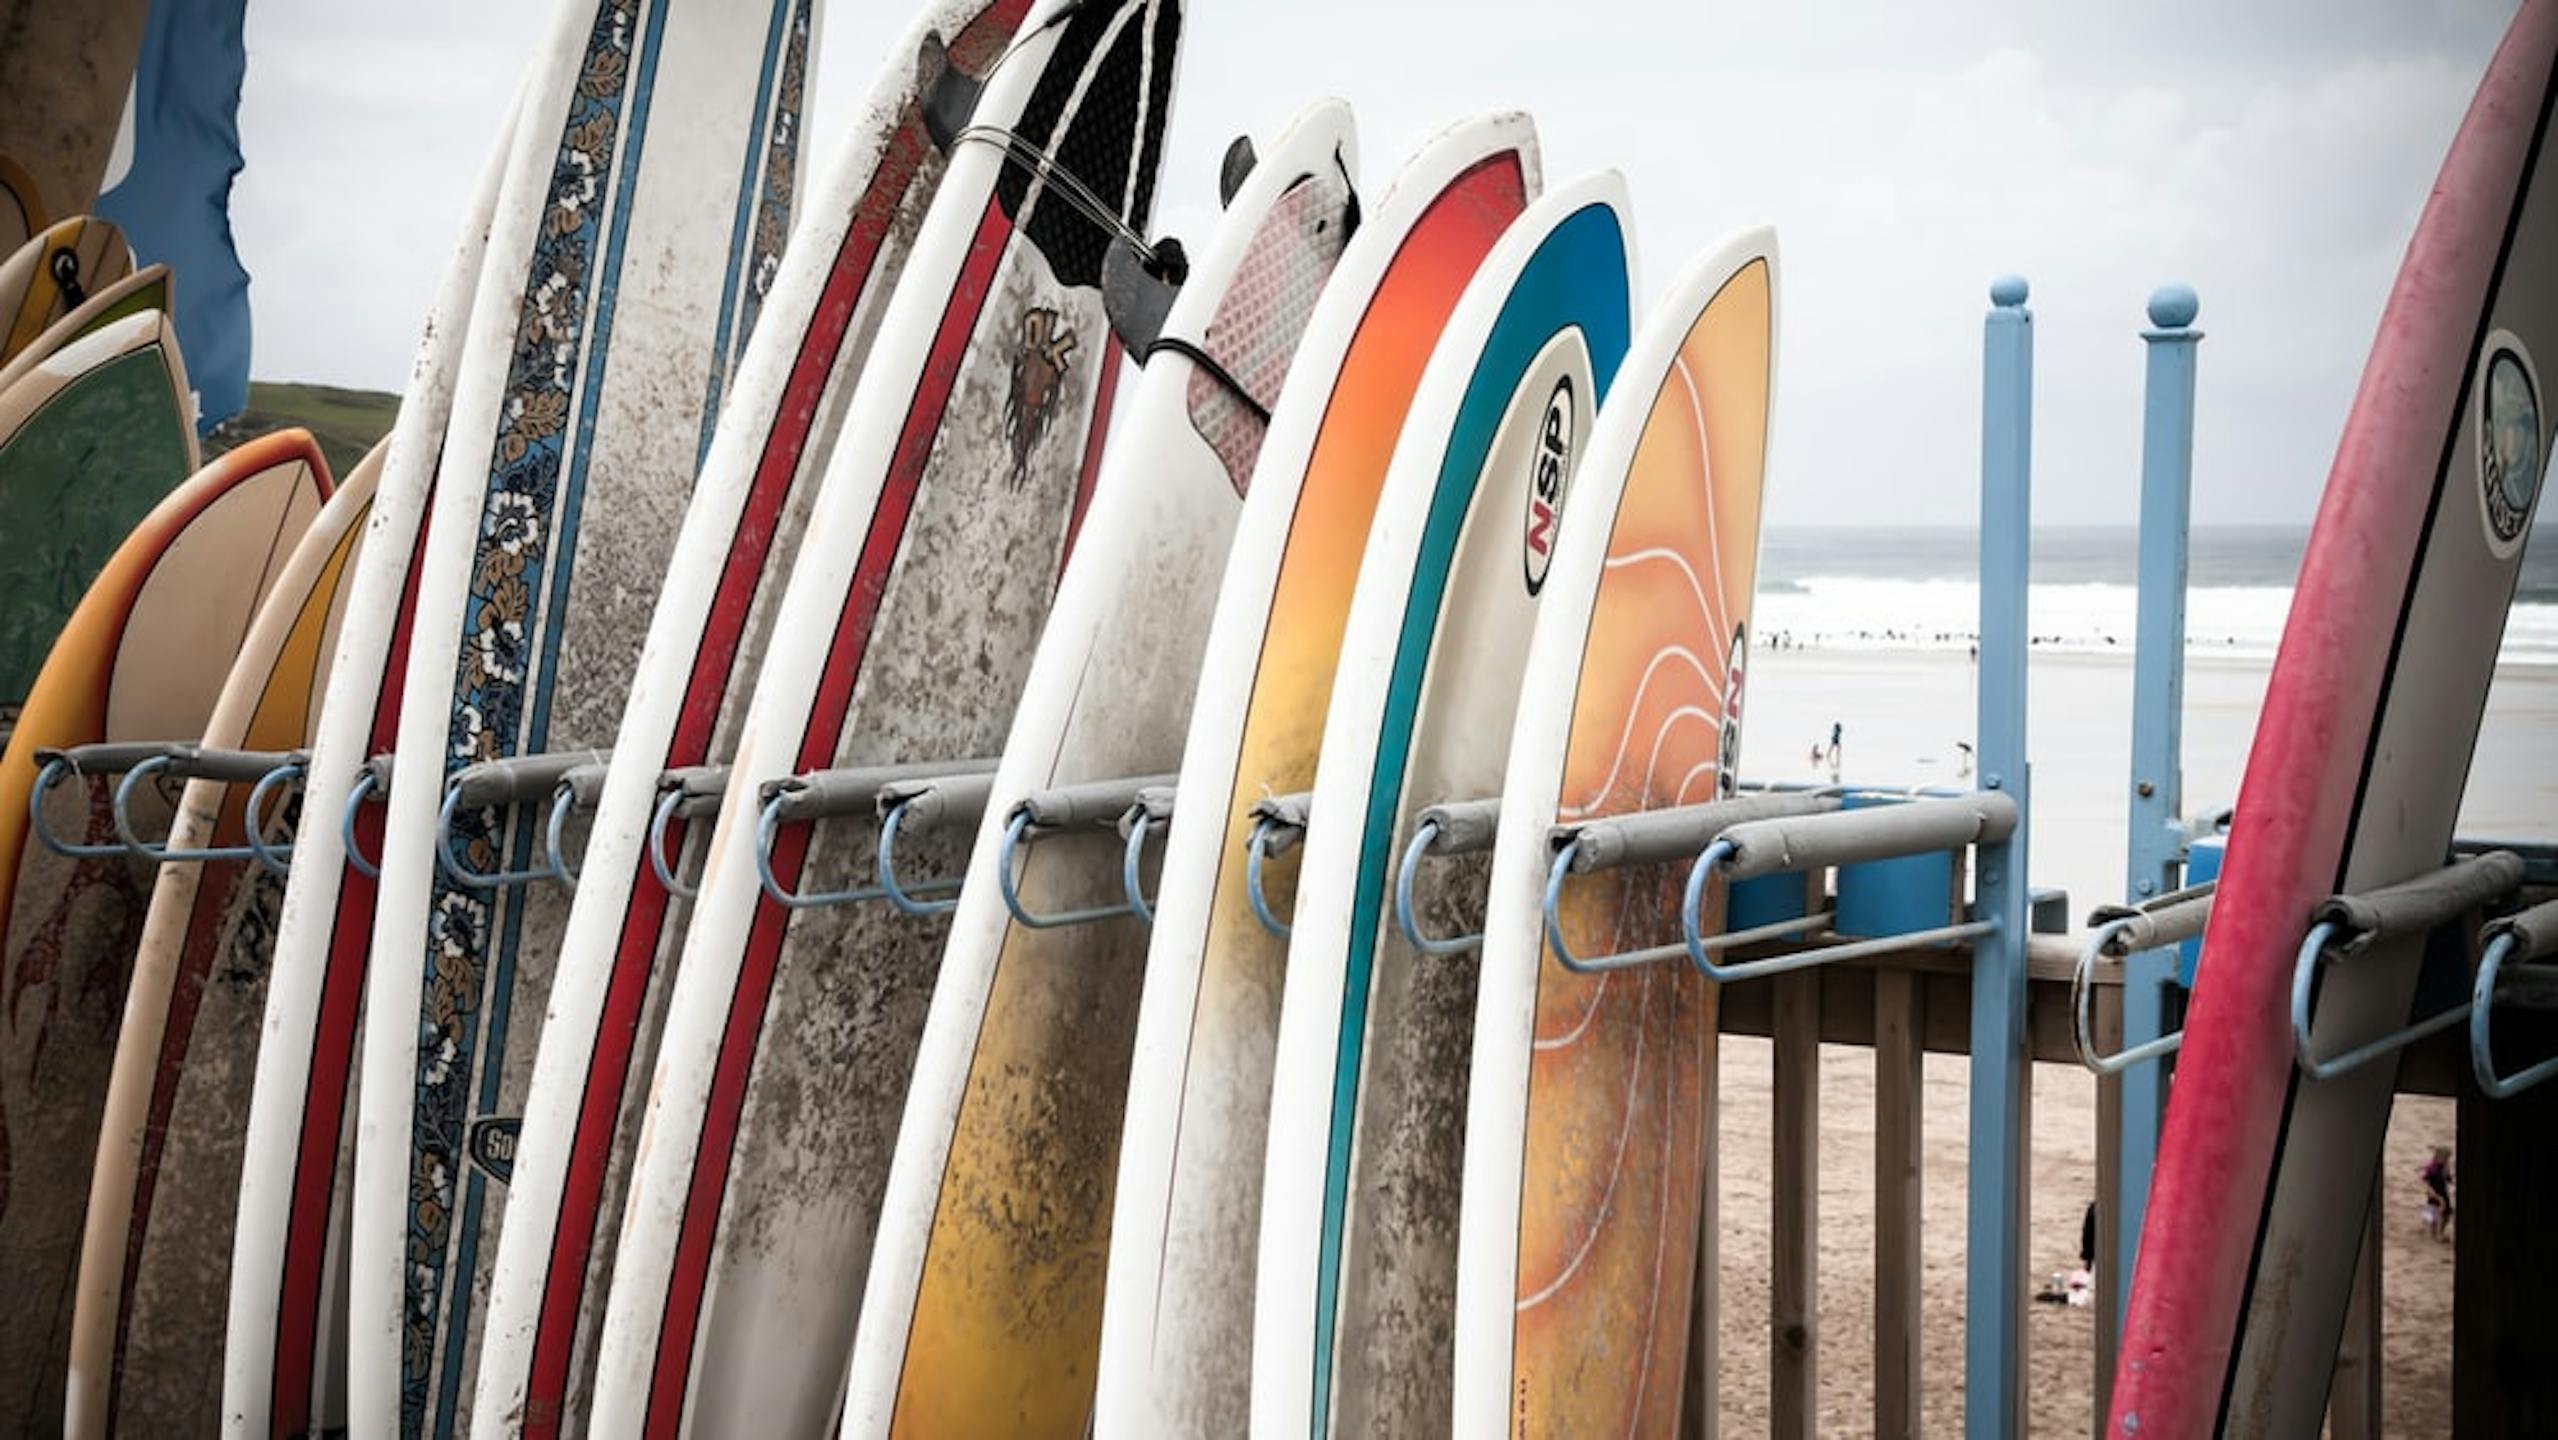 planches de surf